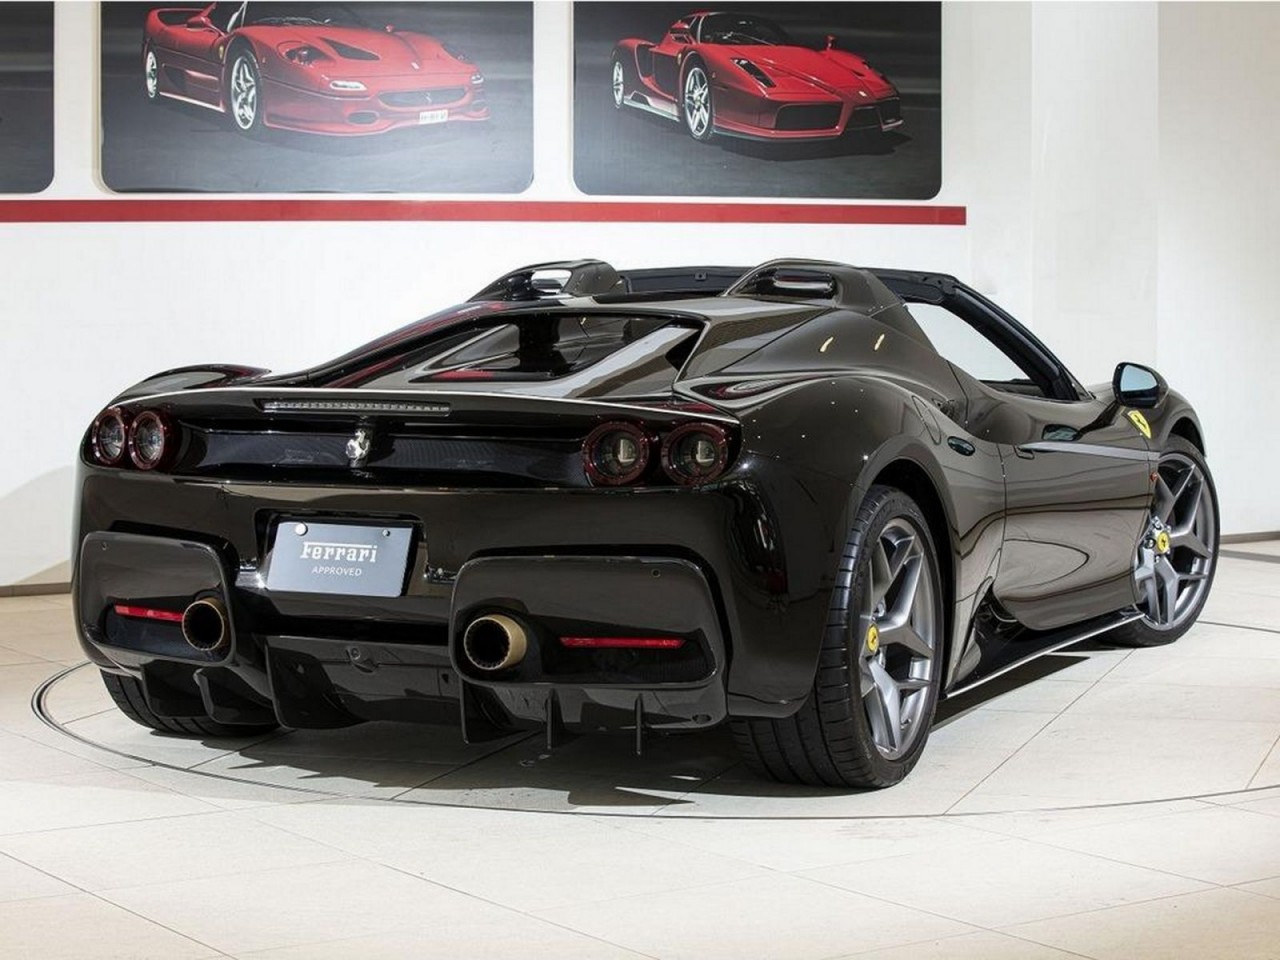 'Hàng độc' Ferrari J50 được rao bán tại Nhật Bản với giá 3,6 triệu USD